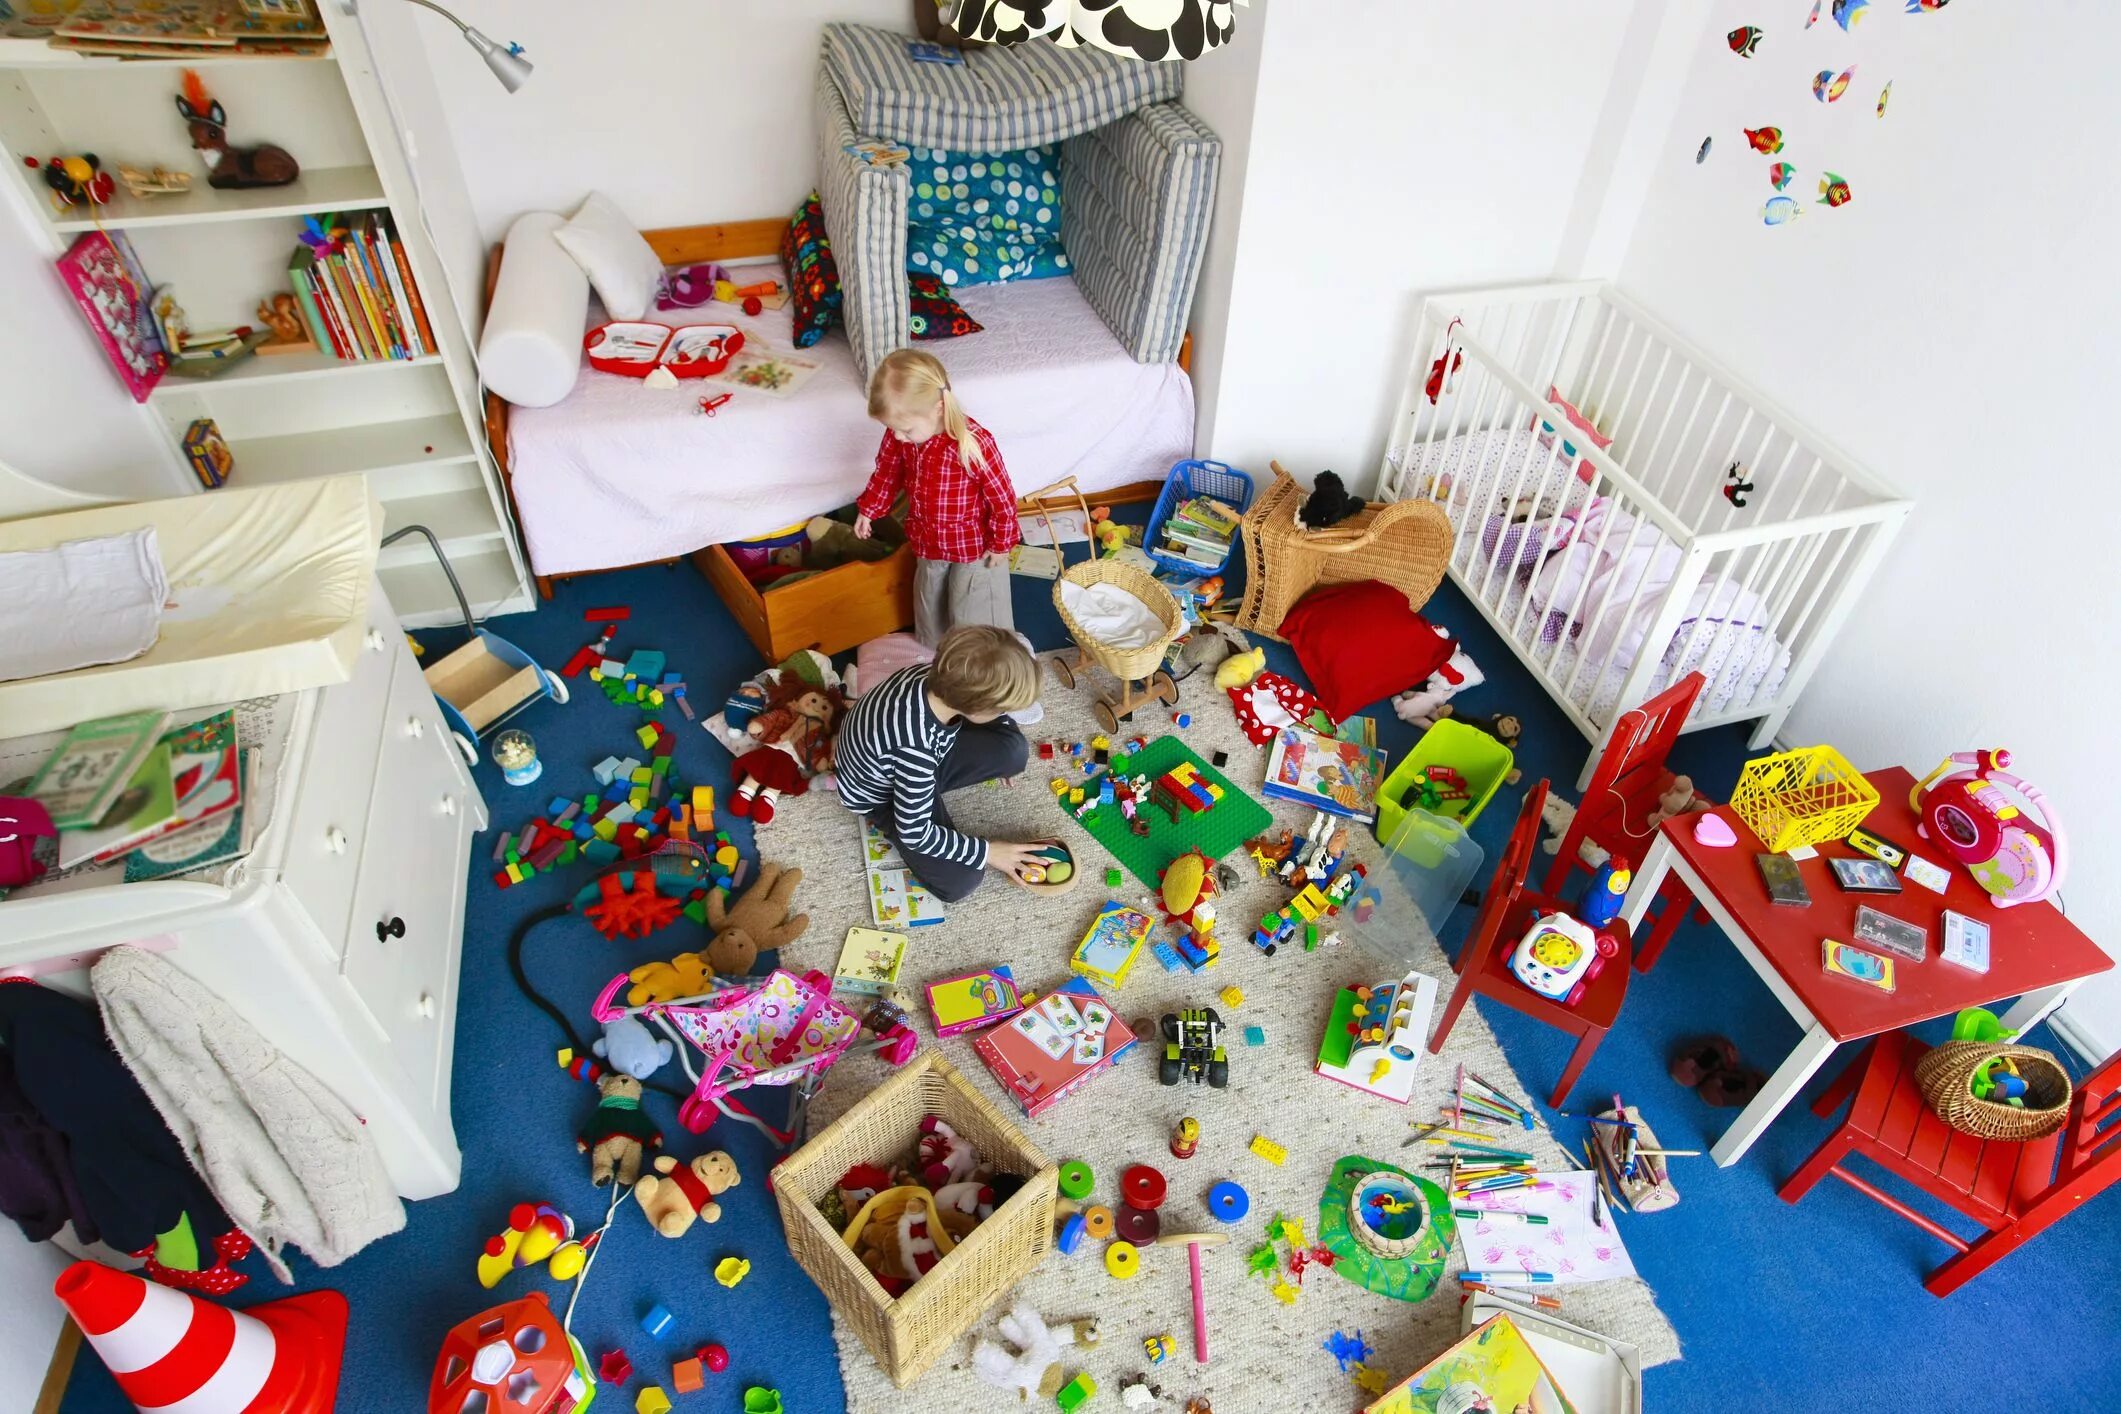 Messy. Беспорядок в детской комнате. Разбросанные игрушки. Комната с разбросанными игрушками. Детская комната с игрушками.